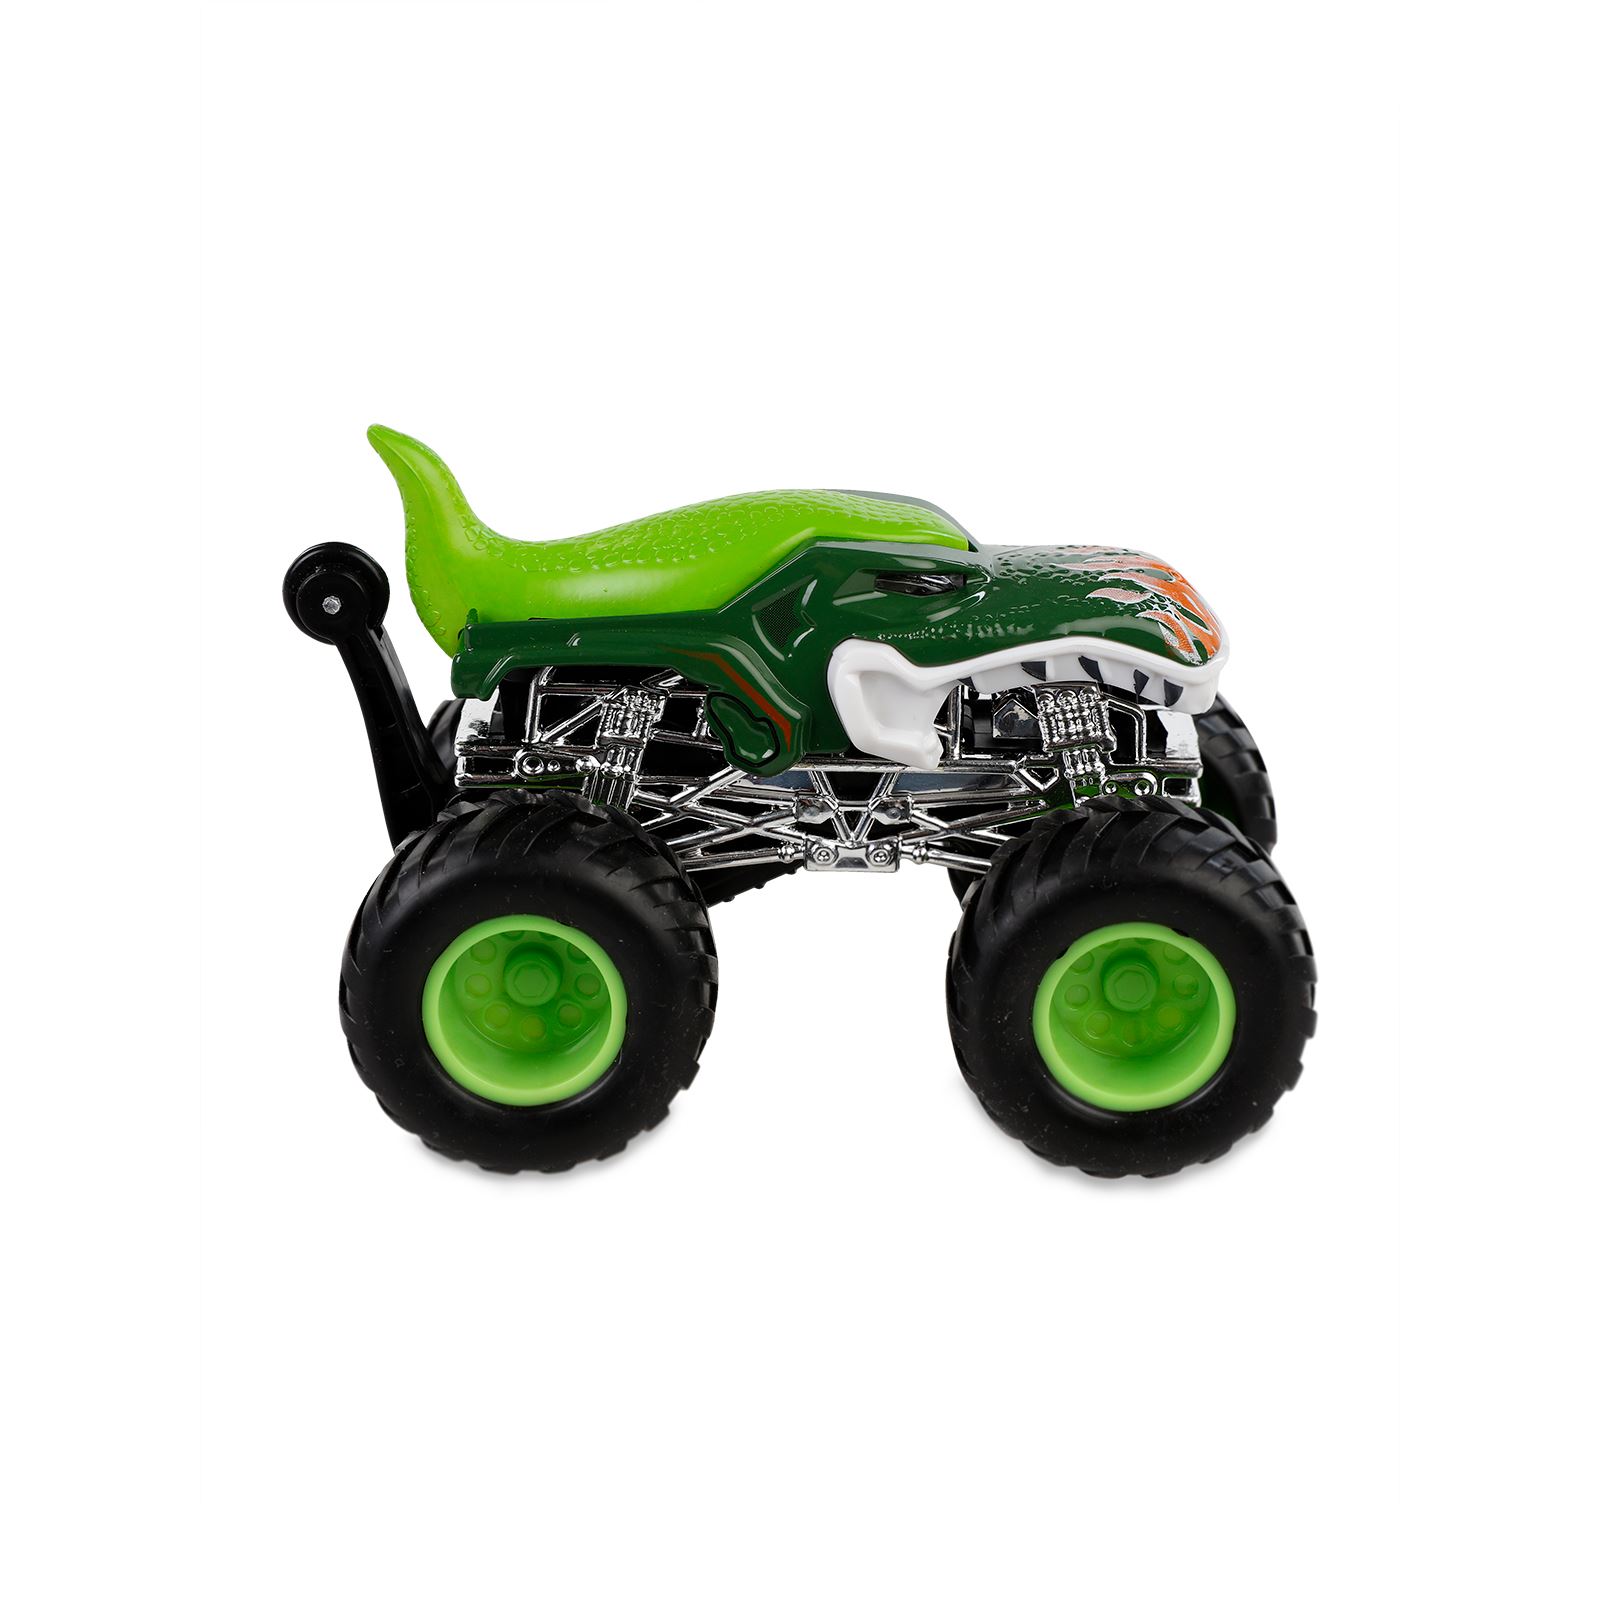 Can Oyuncak Sürtmeli Oyuncak Araba Yeşil